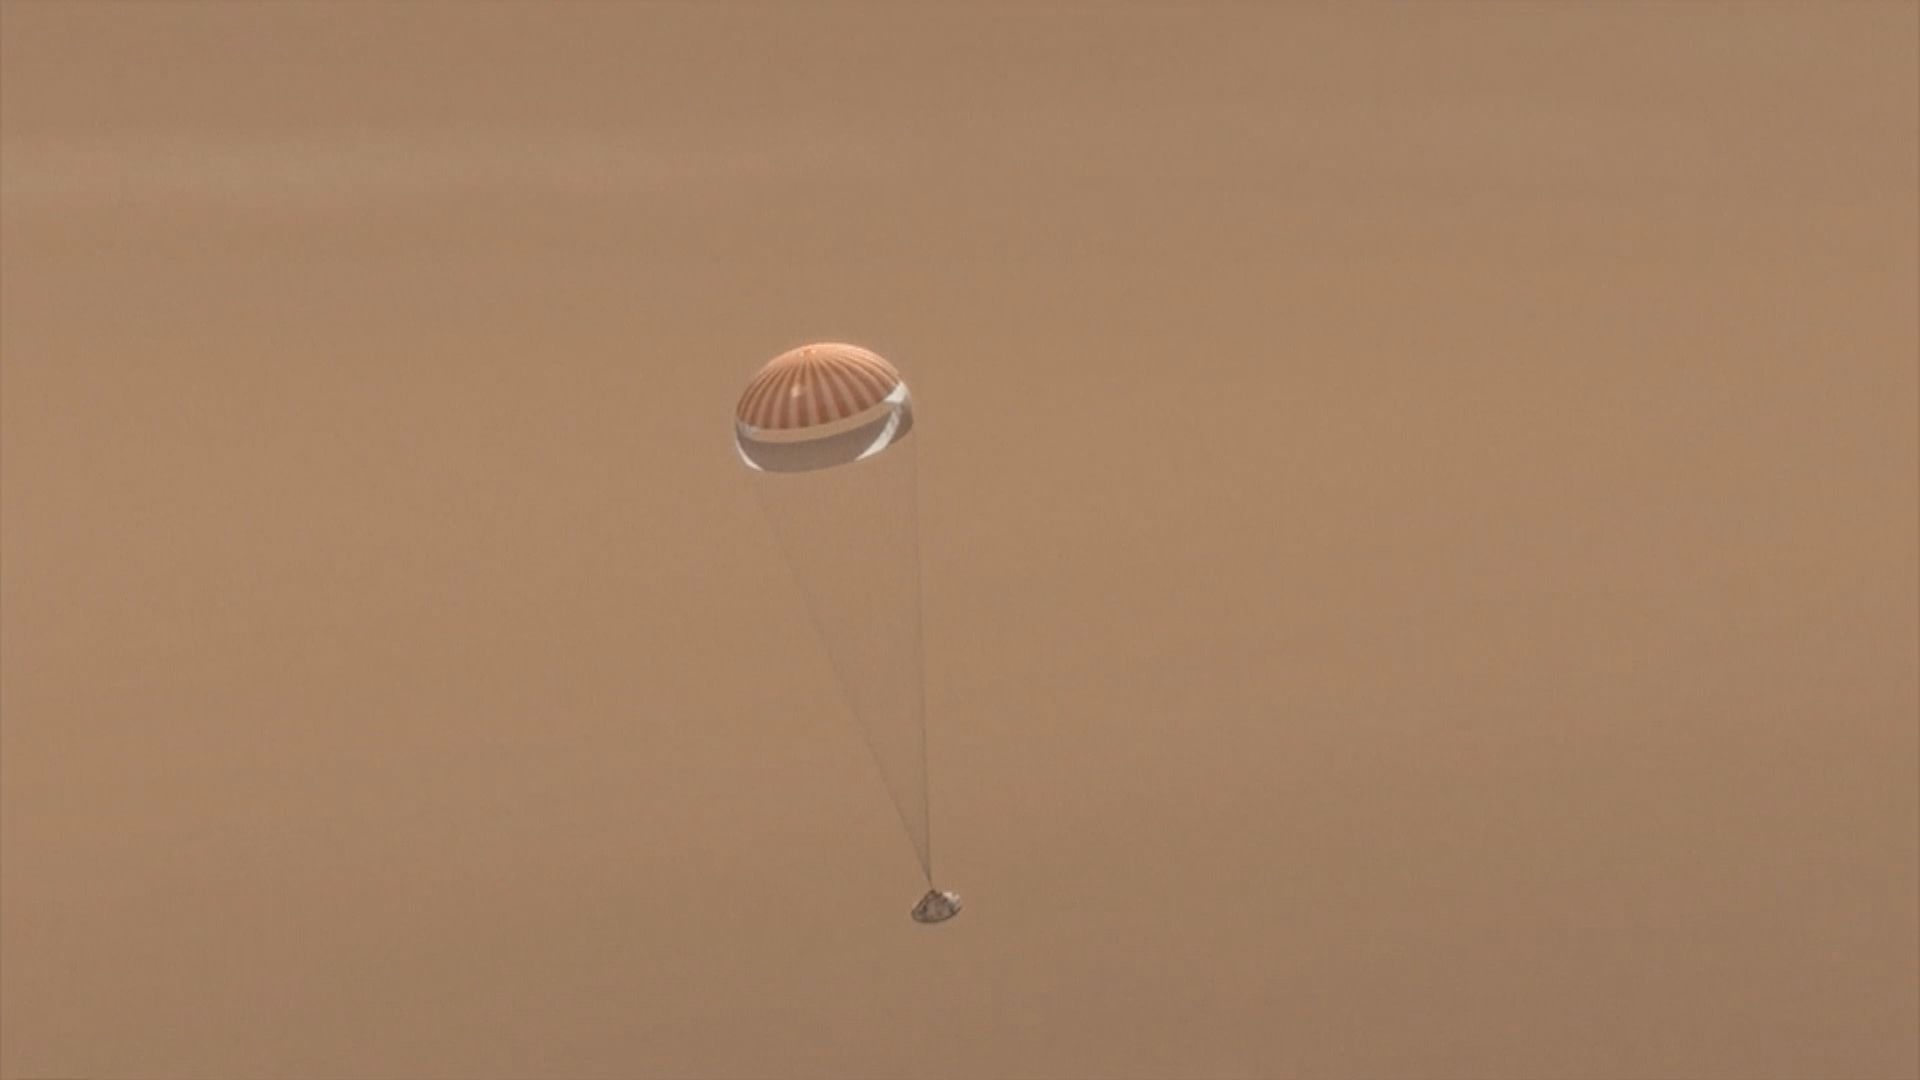 毅力號火星探測器成功著陸